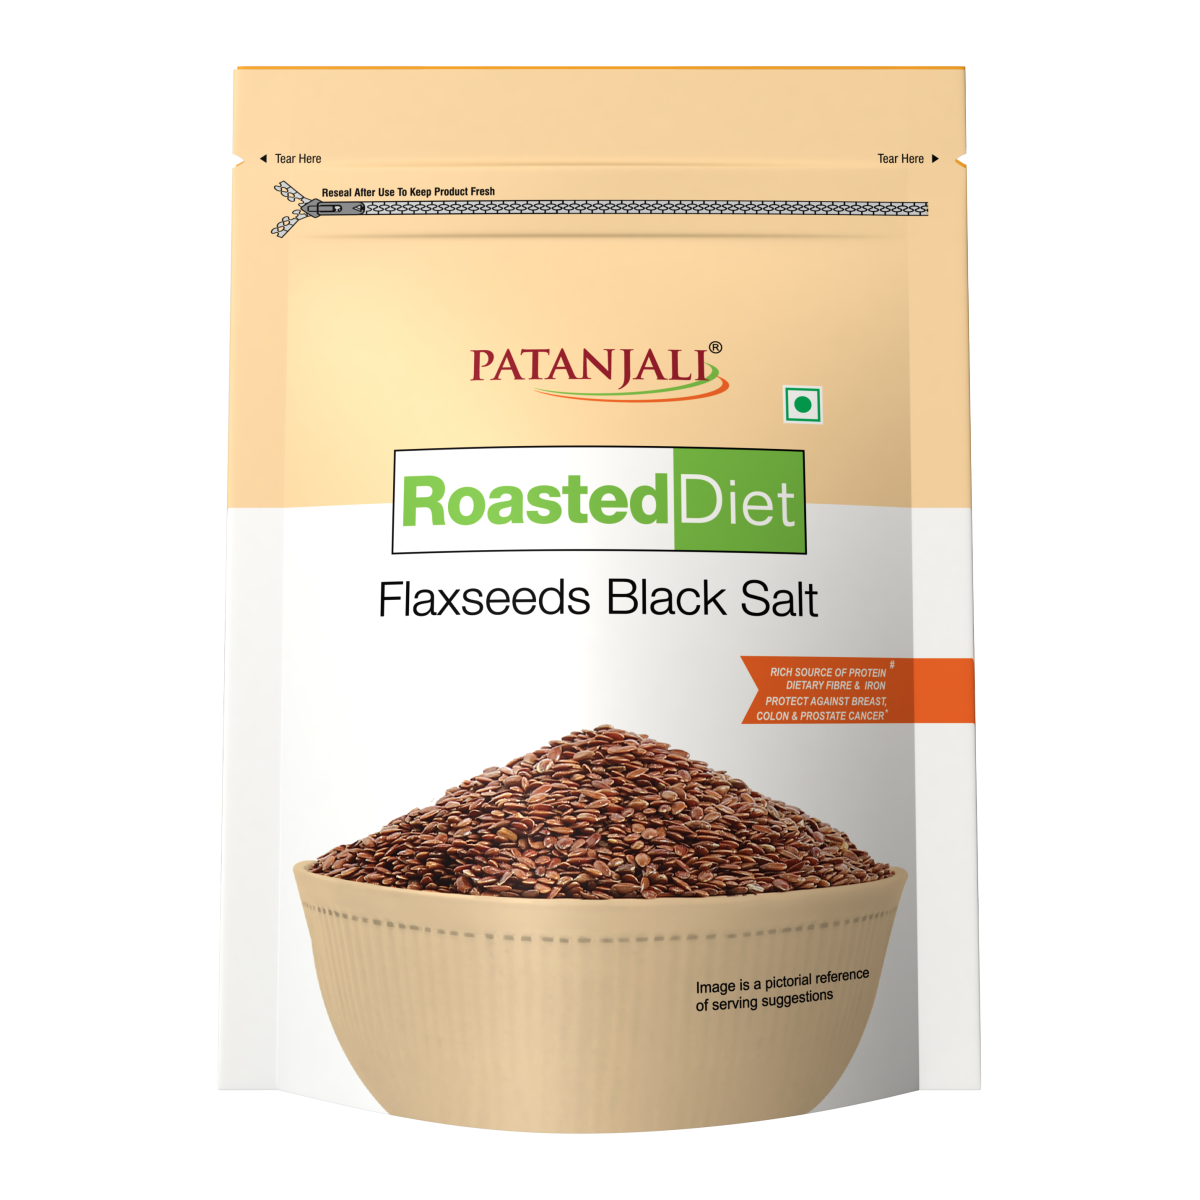 Patanjali Roasted Diet- Flax seed Black Salt